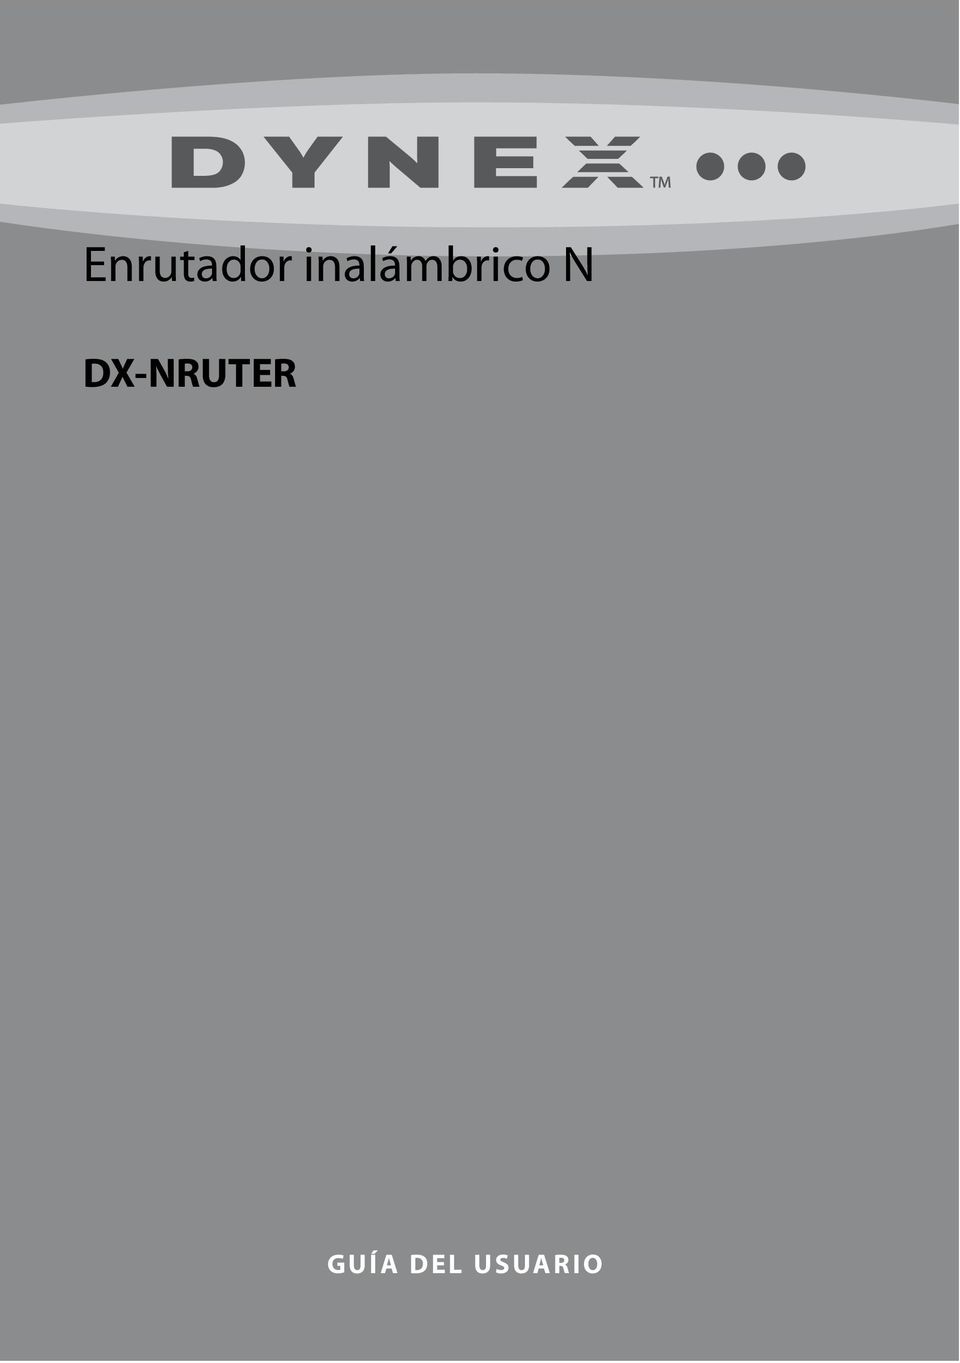 N DX-NRUTER